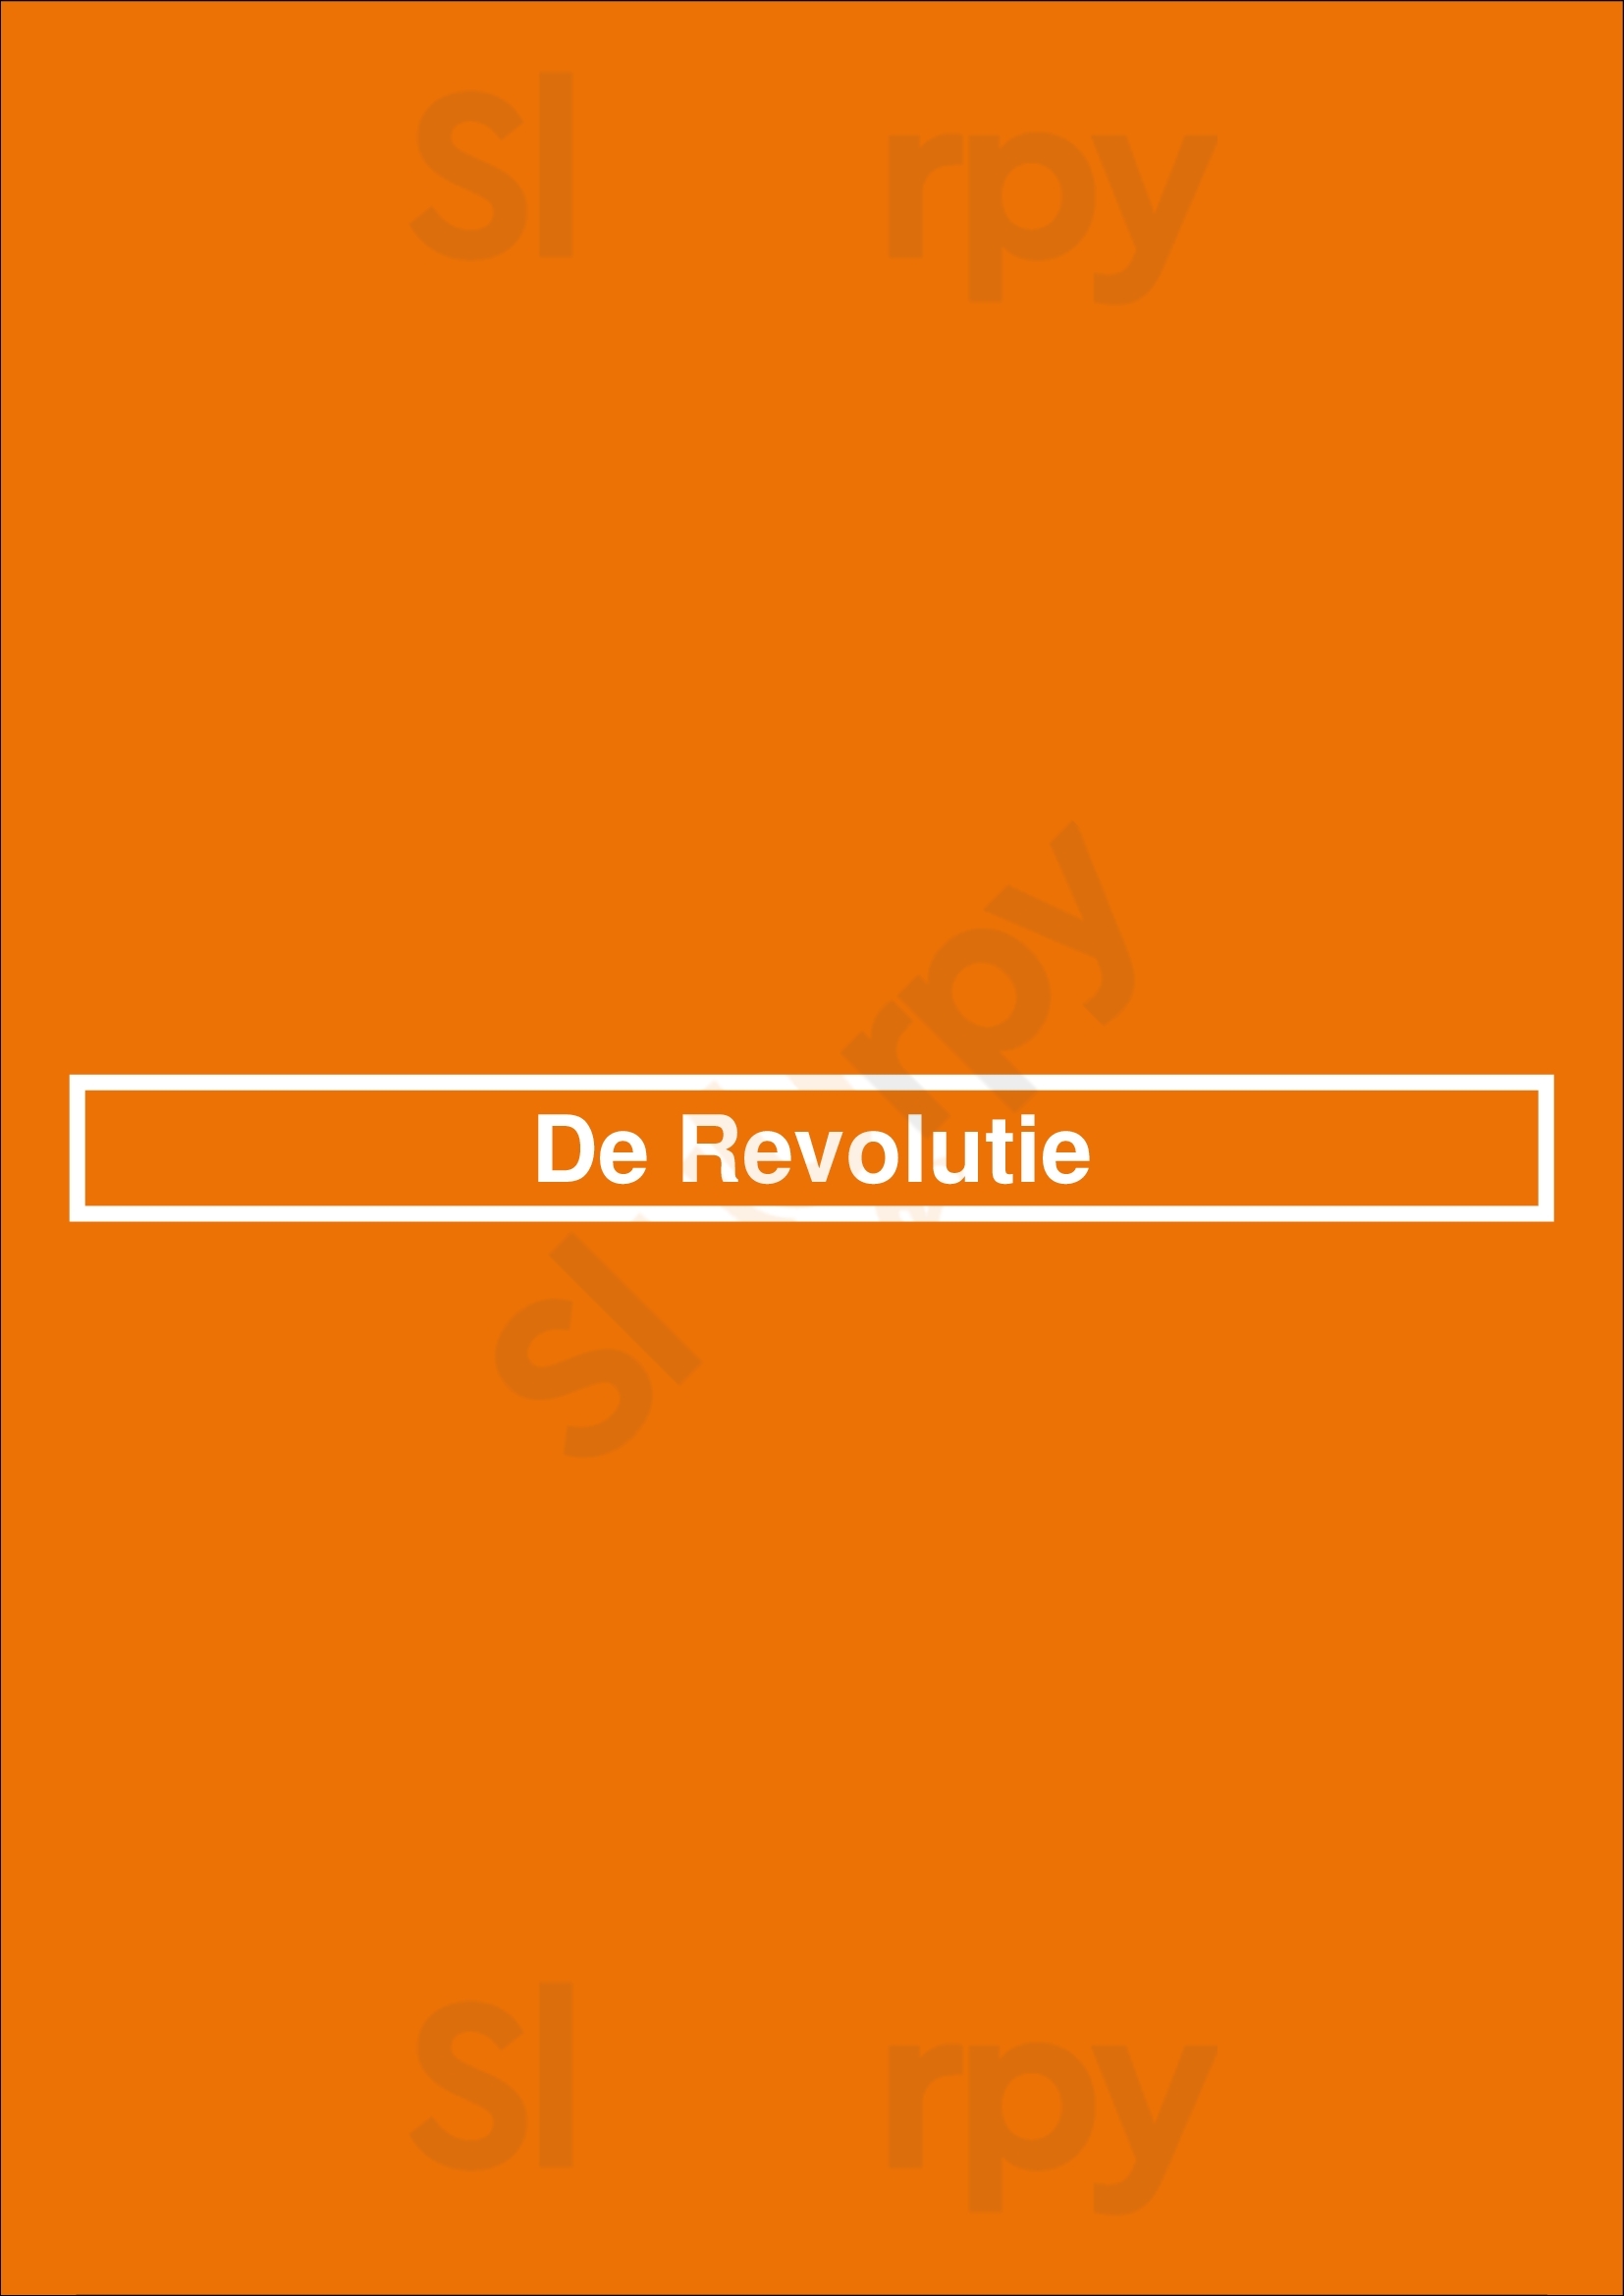 De Revolutie Winterswijk Menu - 1